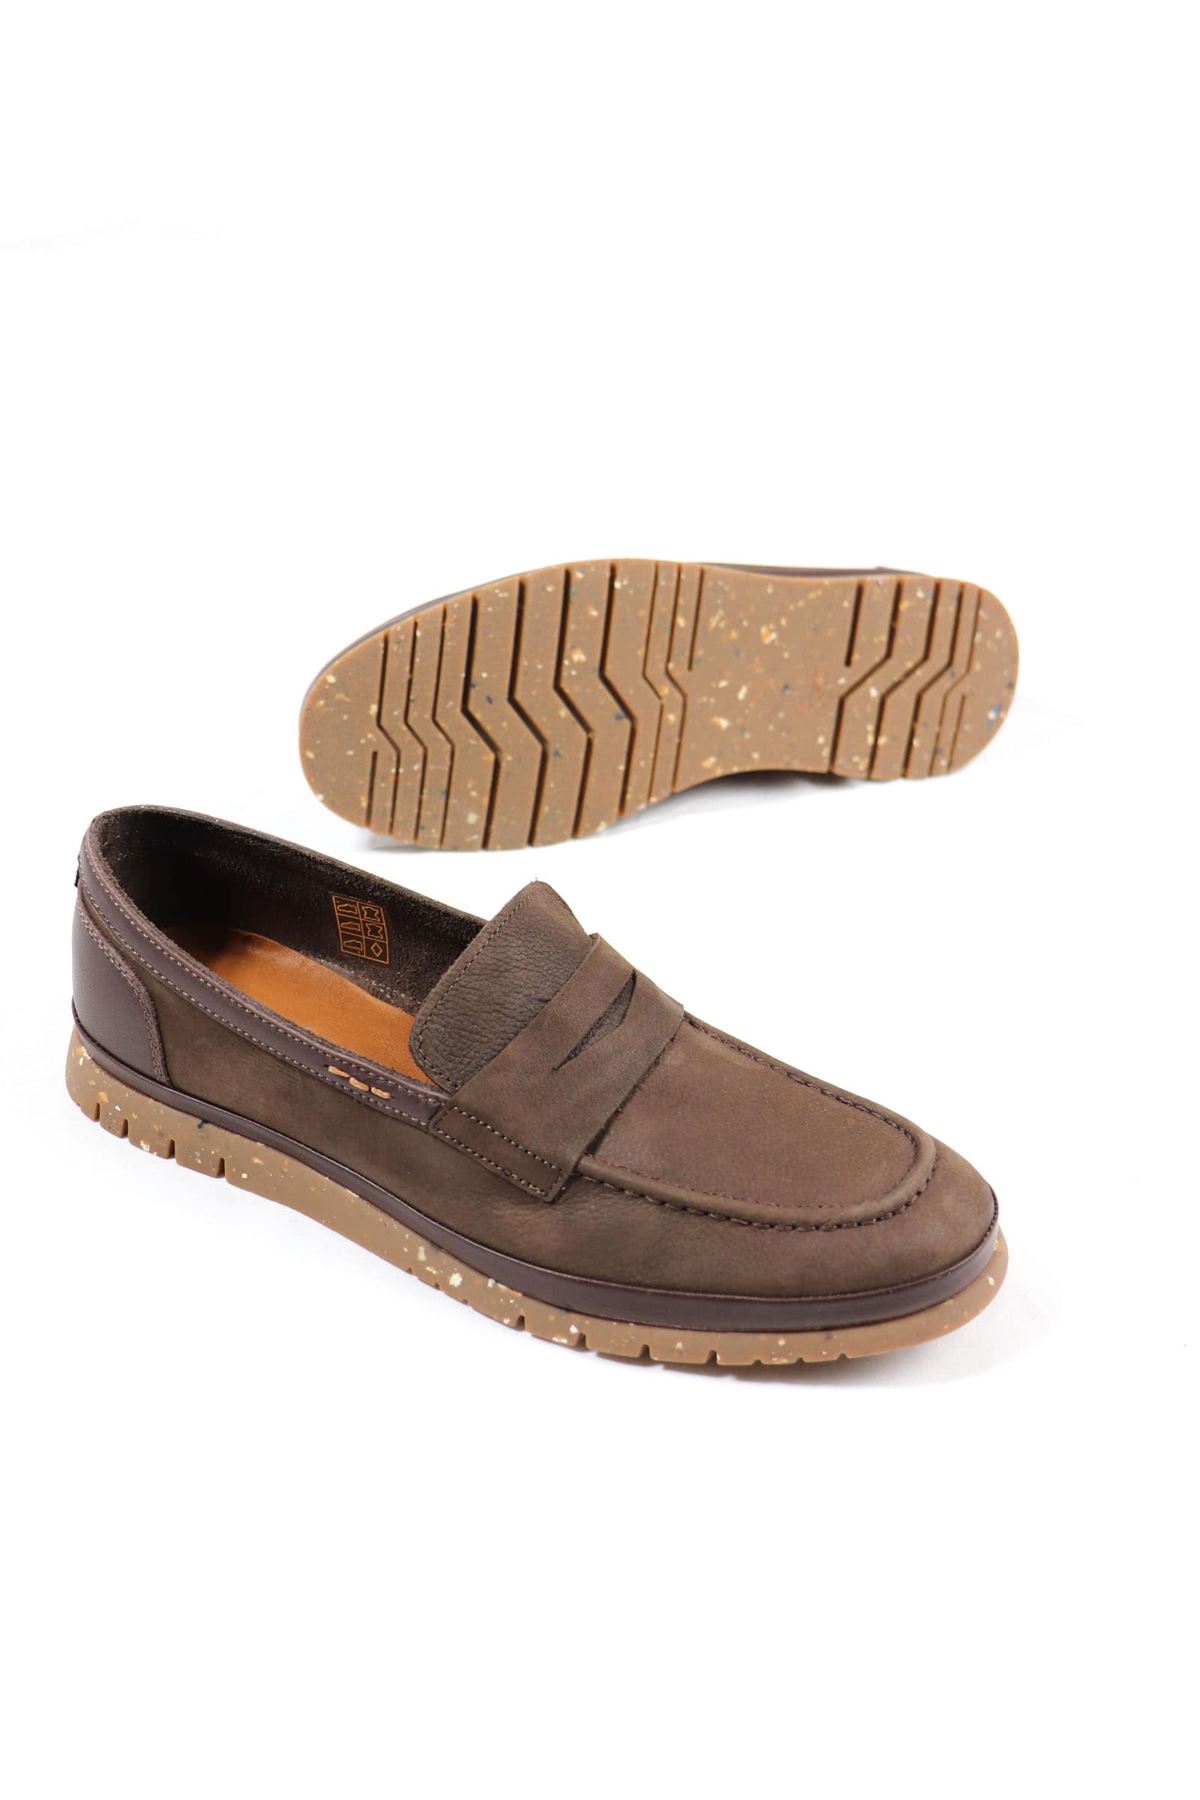 Freefoot - 220161 - Kahverengi Süet Deri Erkek Ayakkabı 